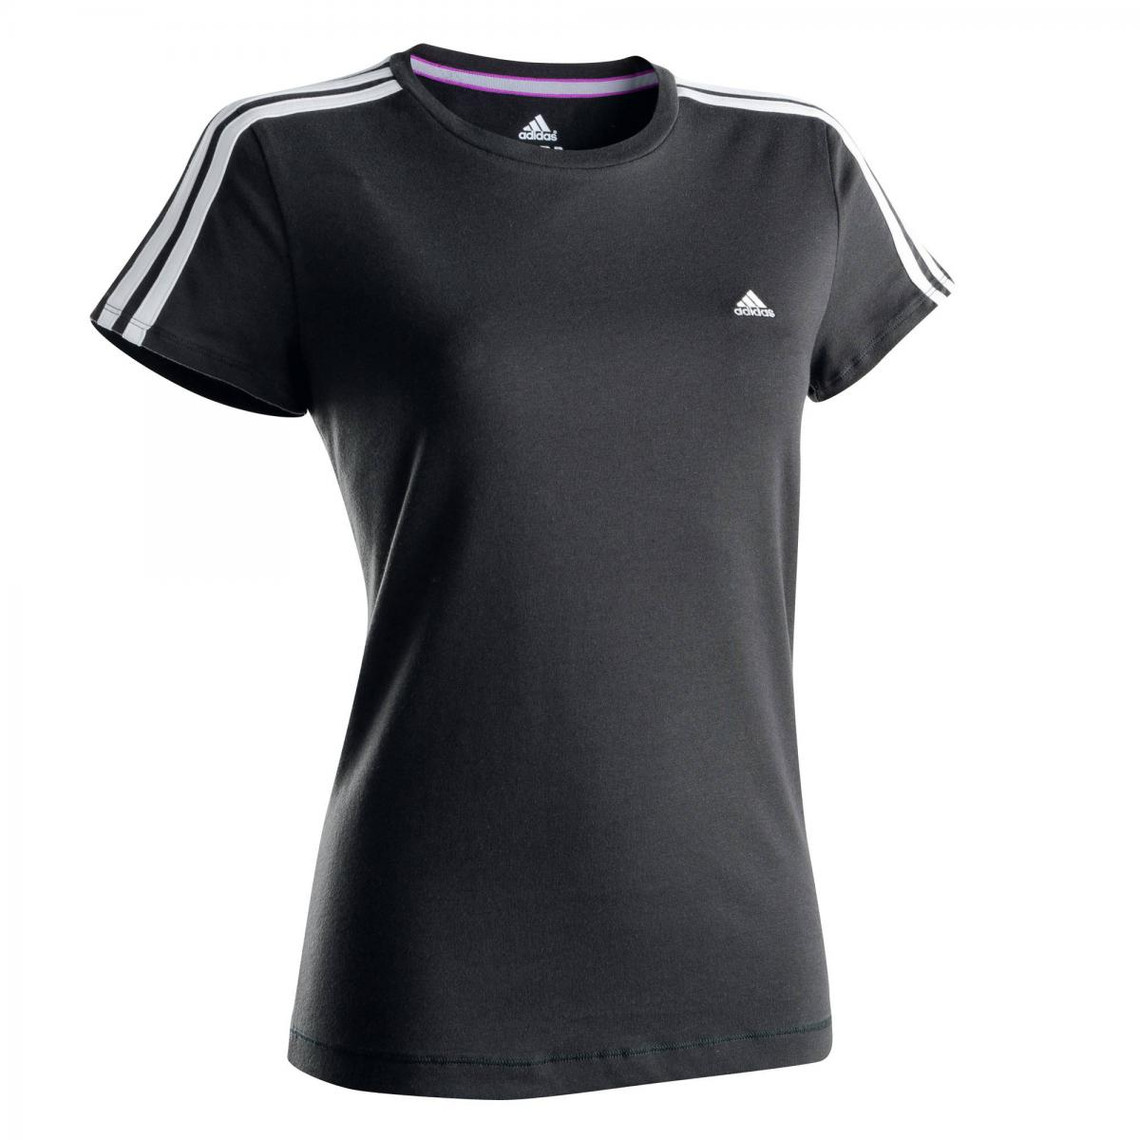 tee shirt adidas femme sport